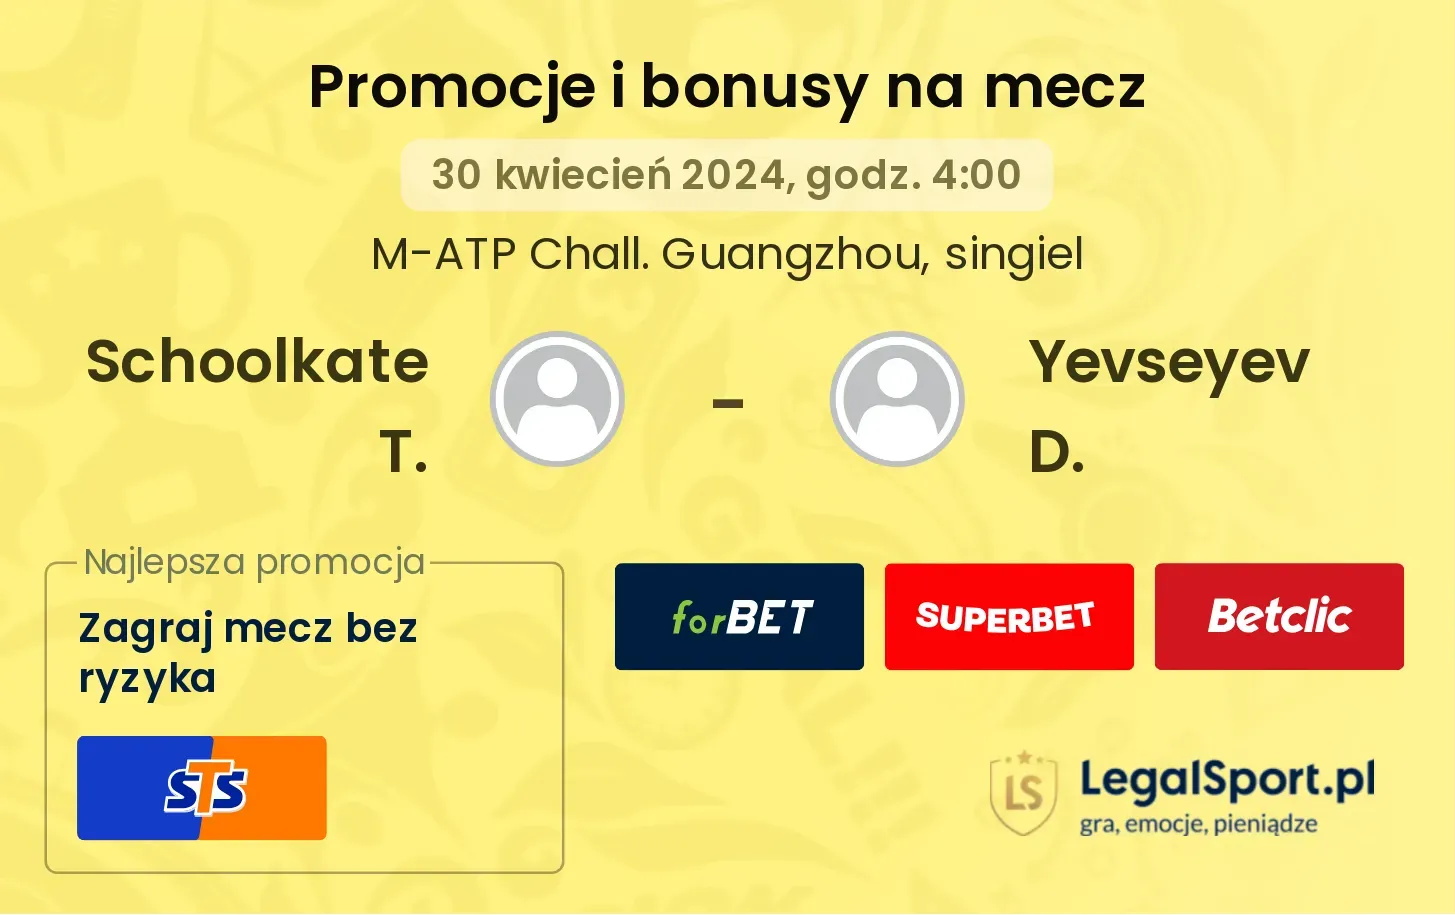 Schoolkate T. - Yevseyev D. promocje bonusy na mecz